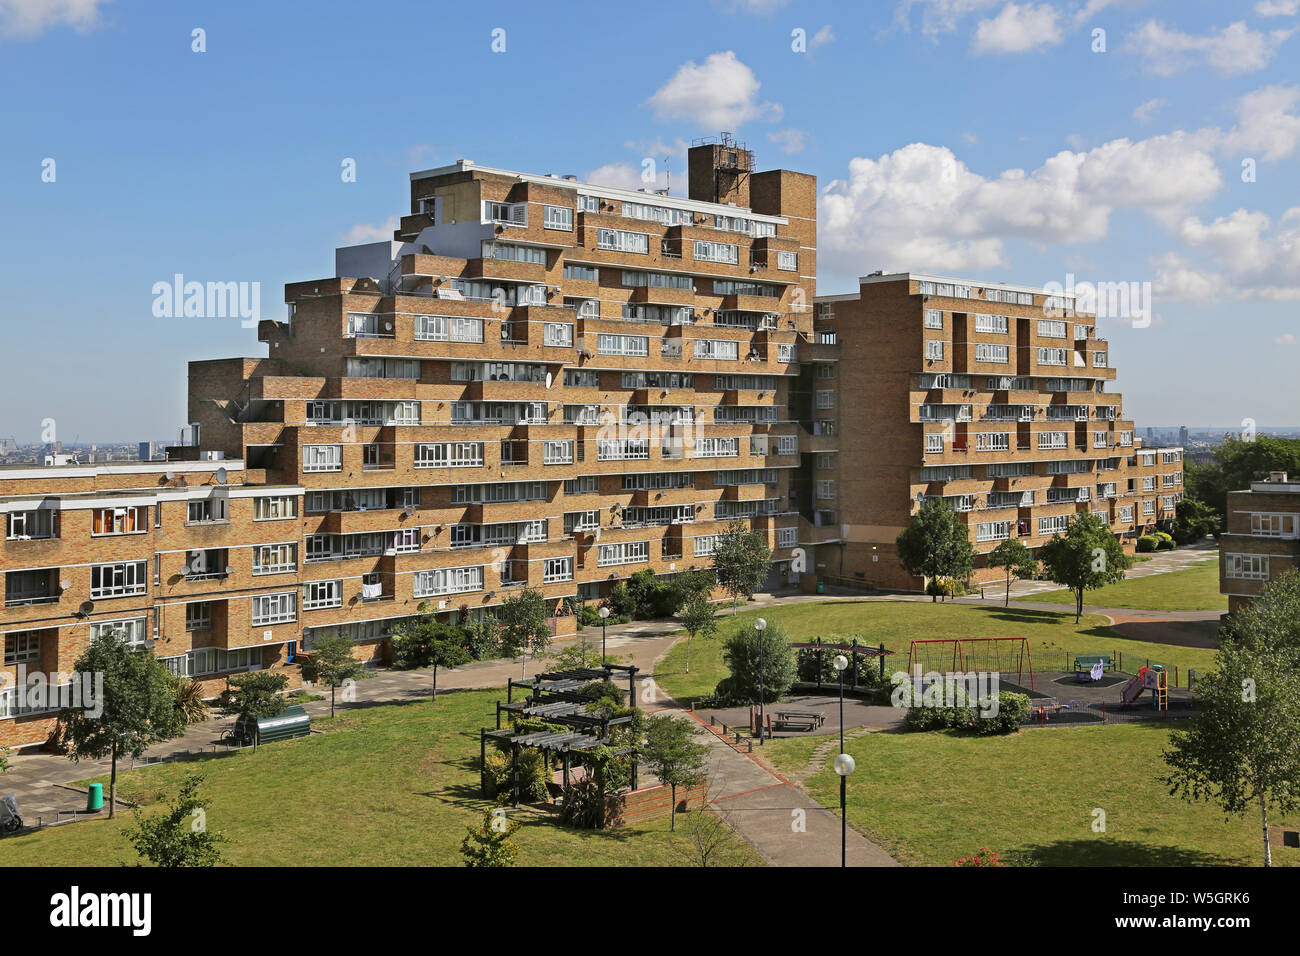 Hohe Blick auf Dawson's Höhen, der berühmten 60er Public Housing Project im Süden Londons, von Kate Macintosh entwickelt. Blick nach Norden vom Süden. Stockfoto